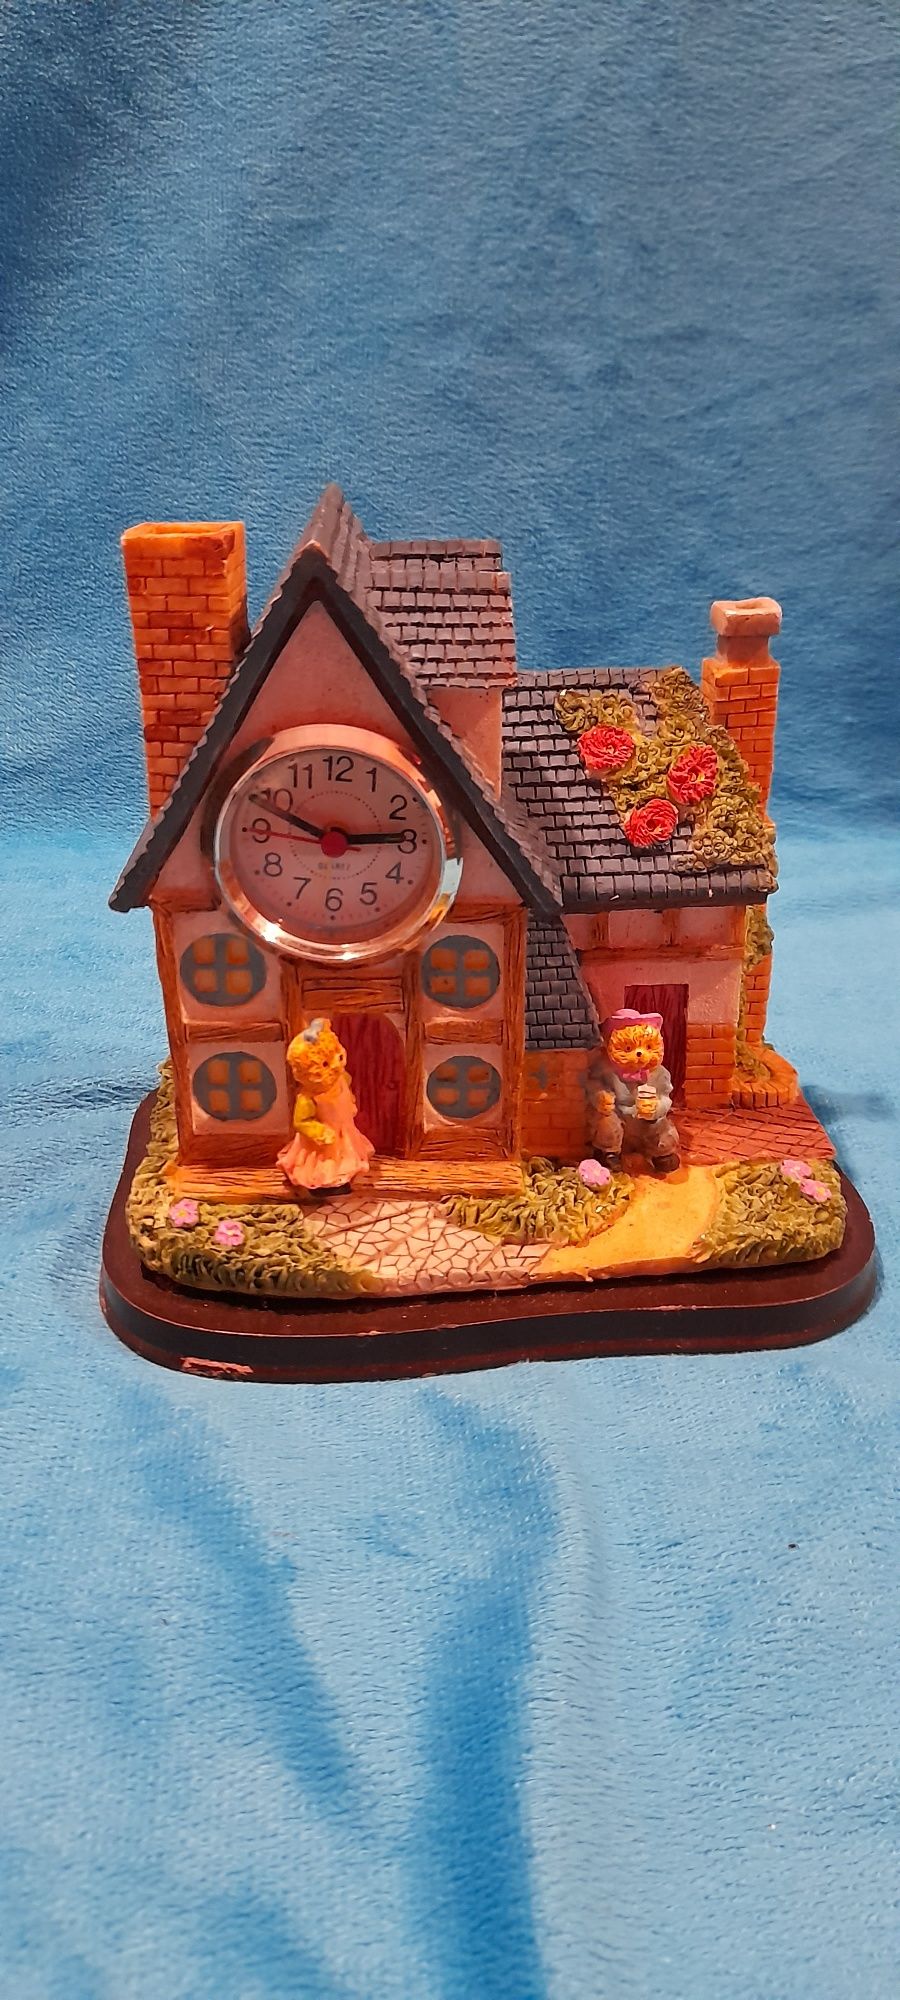 Casa de resina com Relógio